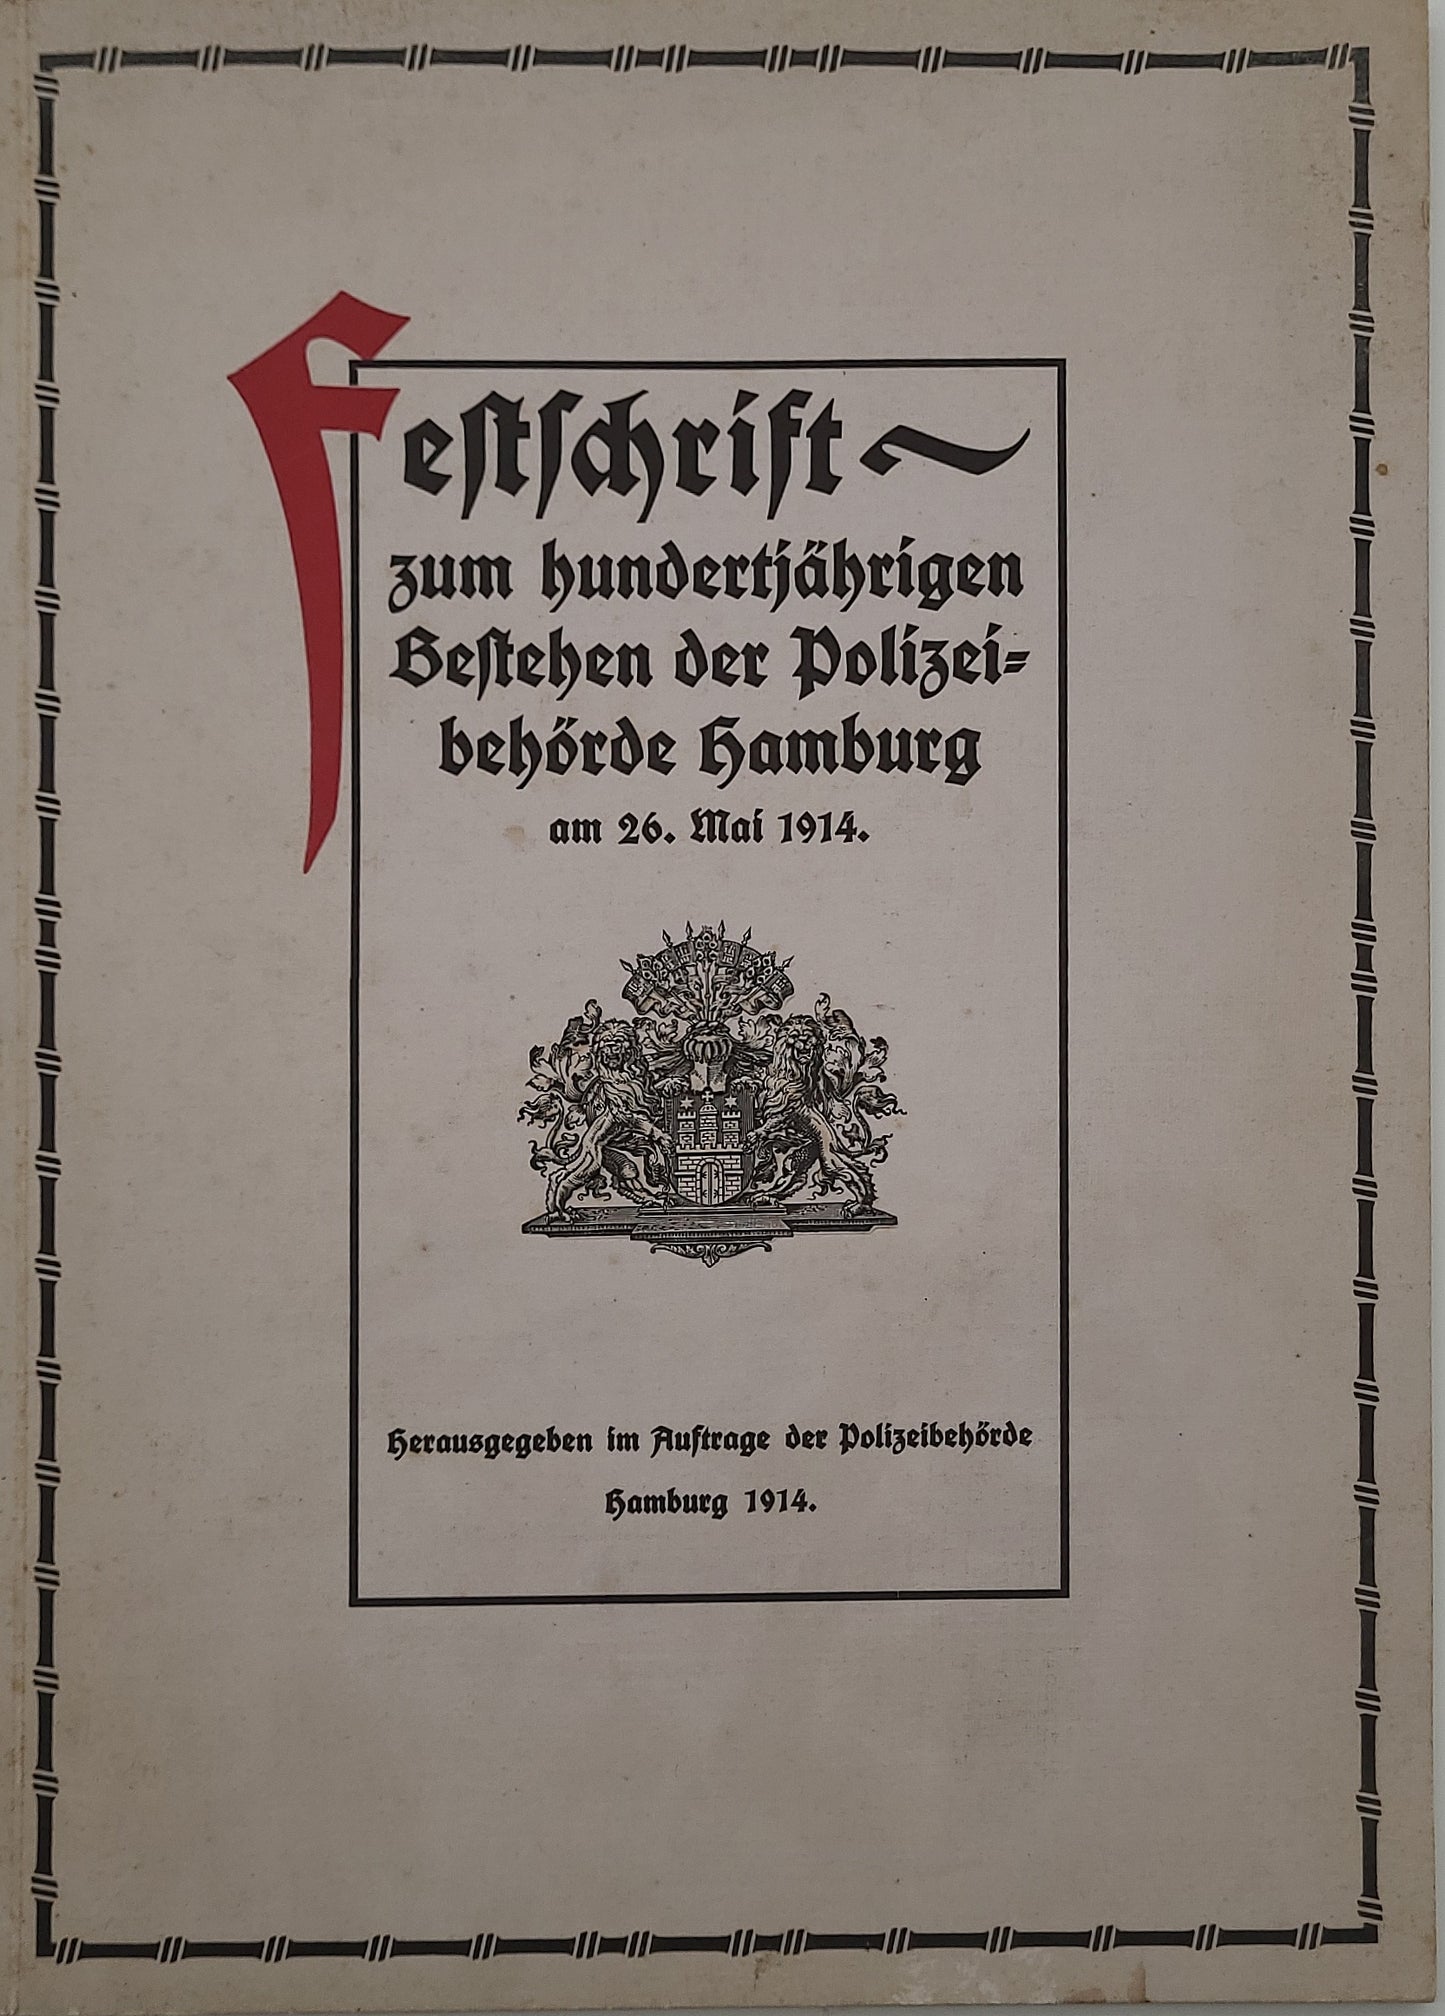 Festschrift zum hundertjährigen Bestehen der Polizeibehörde Hamburg